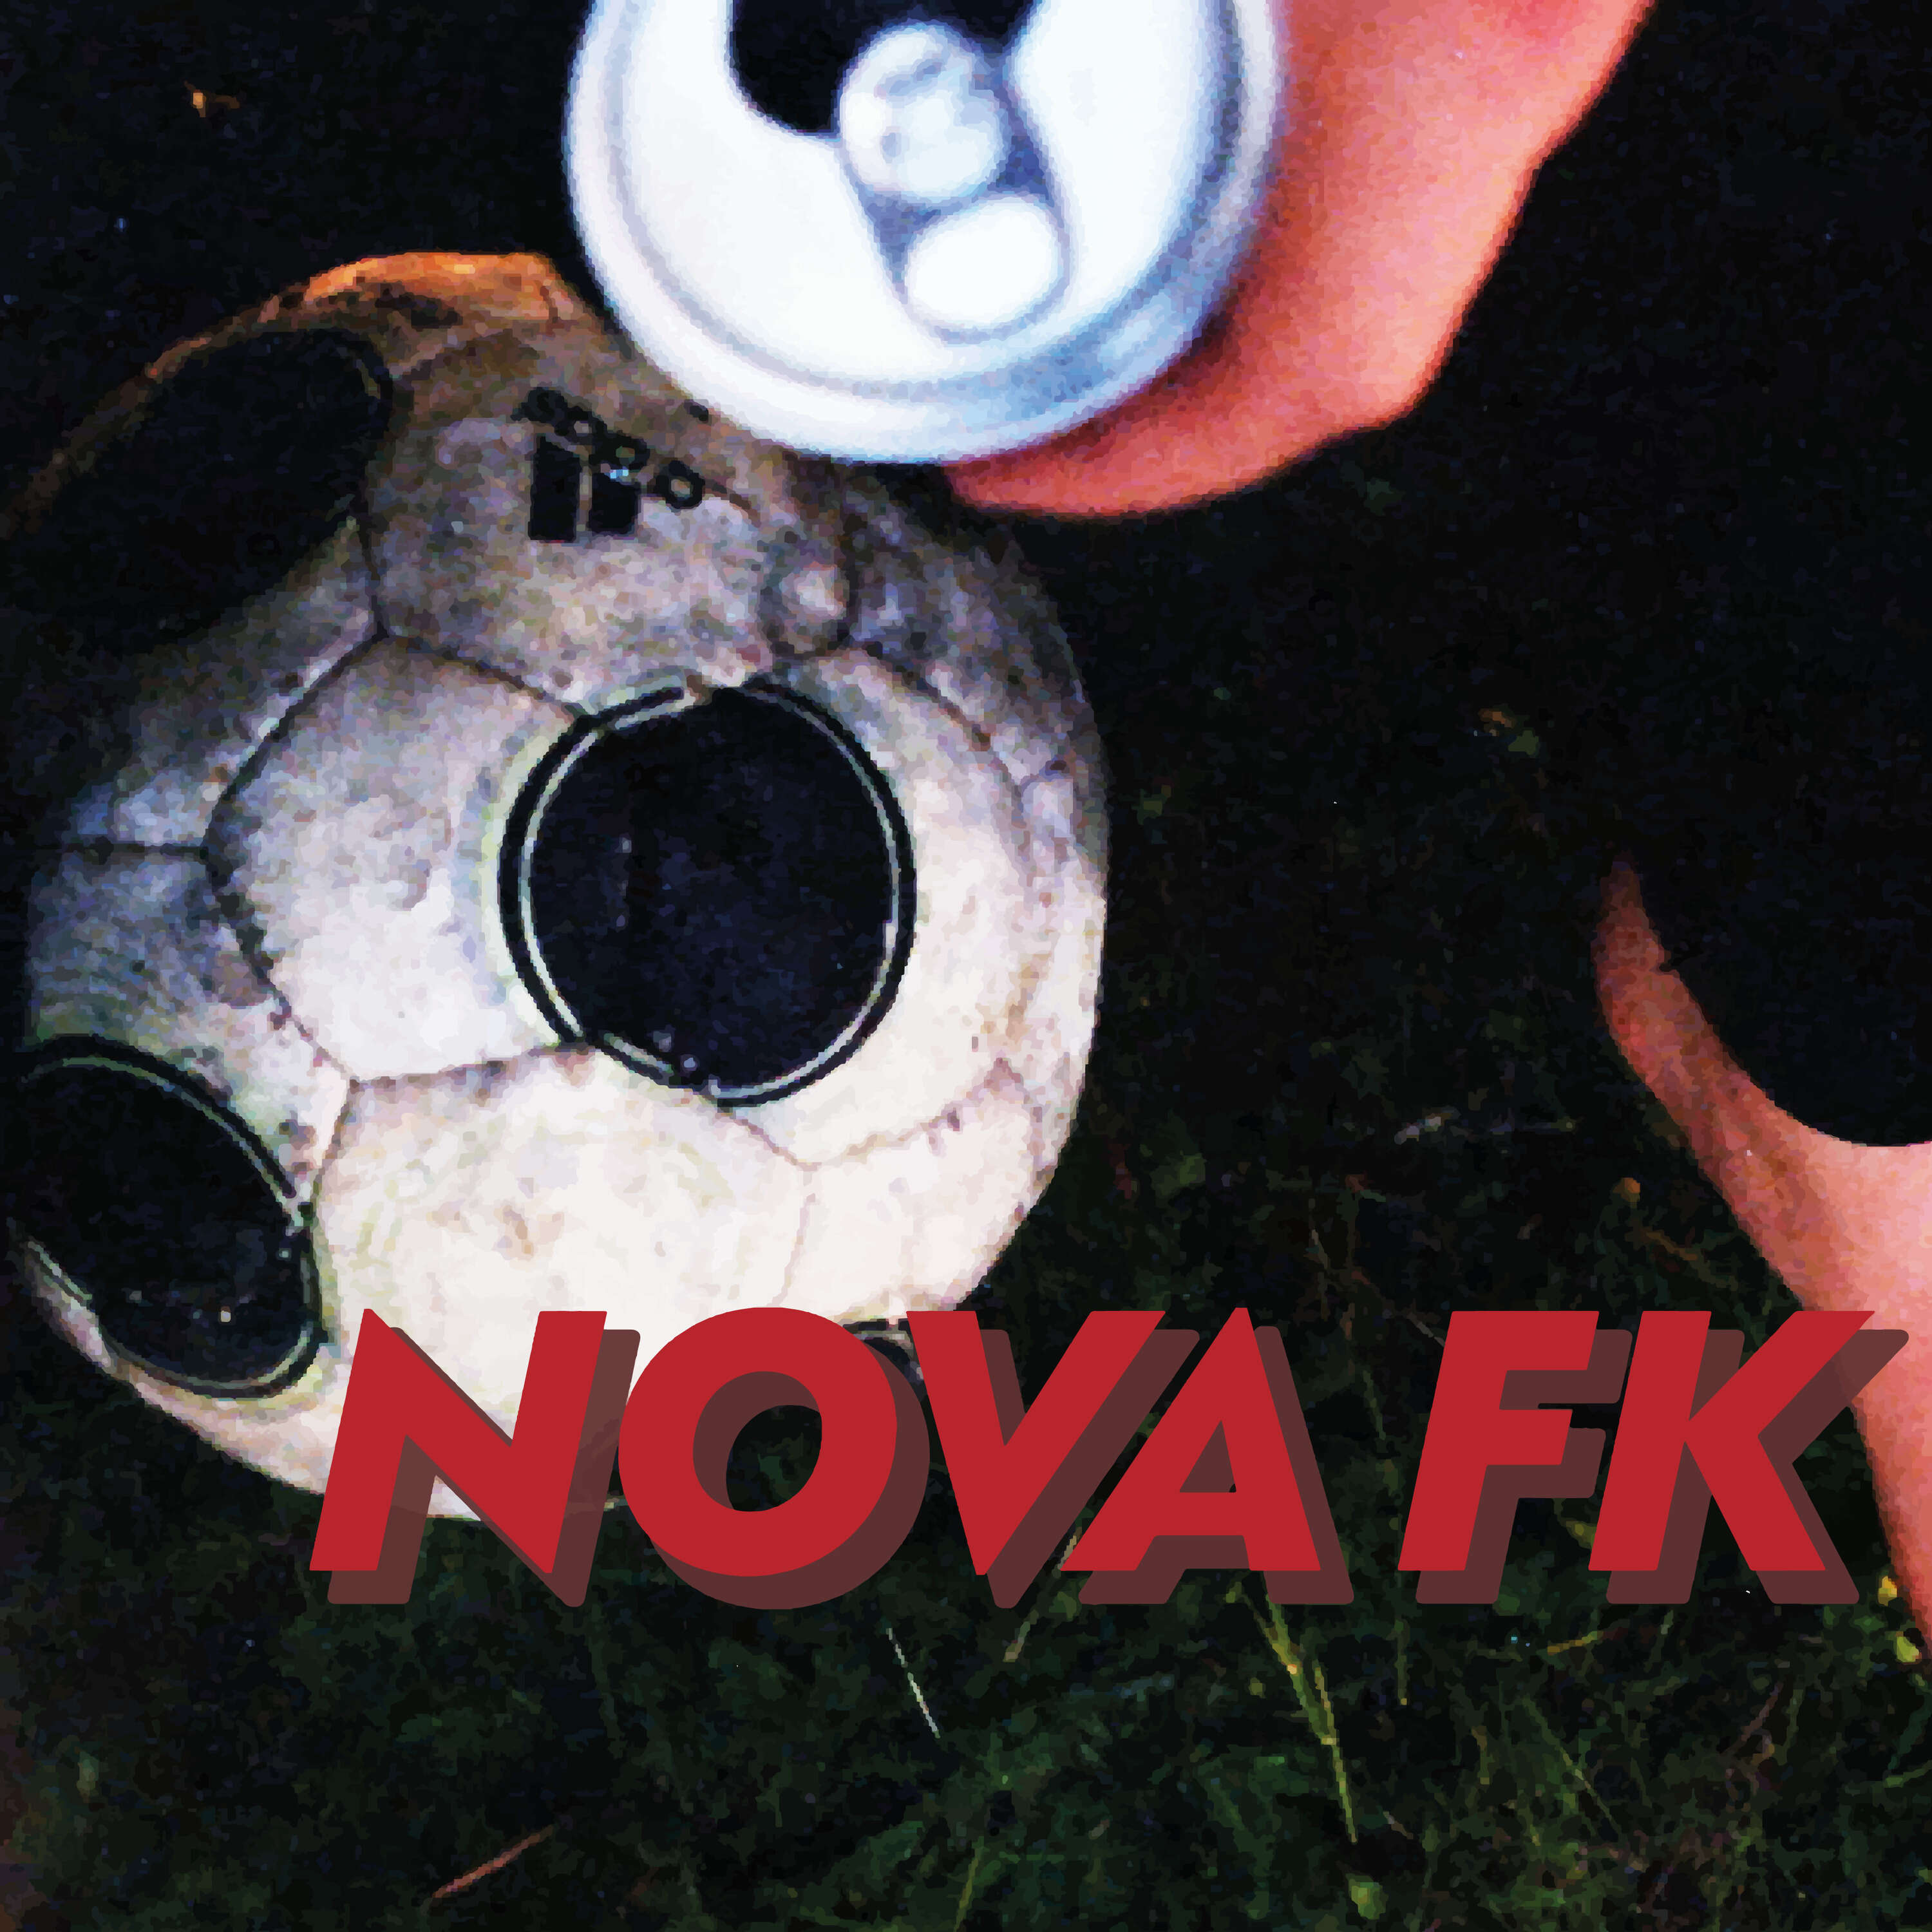 Nova FK #10 - Alt annet enn VM, takk